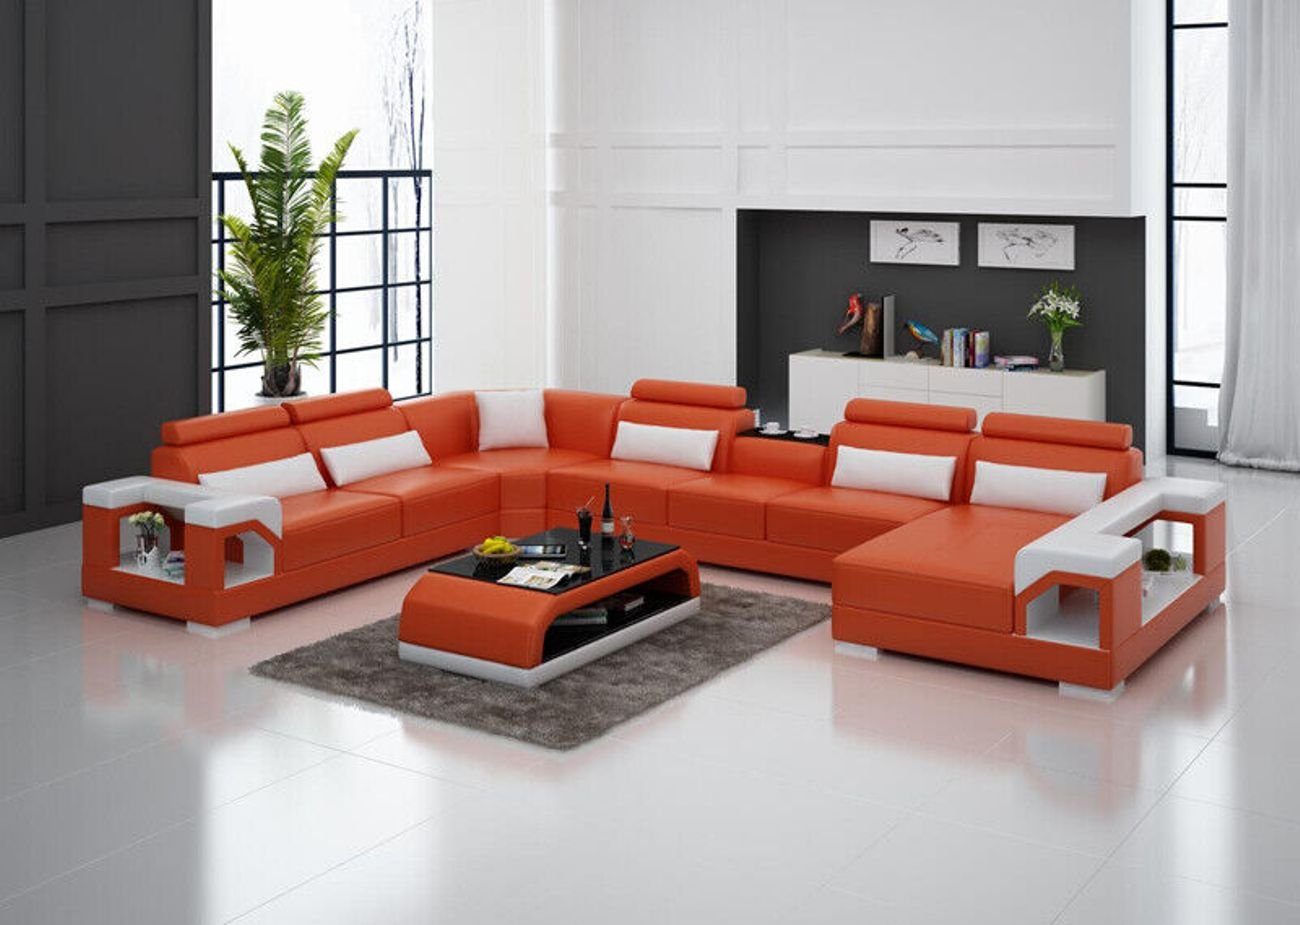 JVmoebel Ecksofa Leder Eck Couchen Sofa Moderne Sitz Couch Wohnlandschaft+Tisch+USB, 2 Teile Orange/Weiß